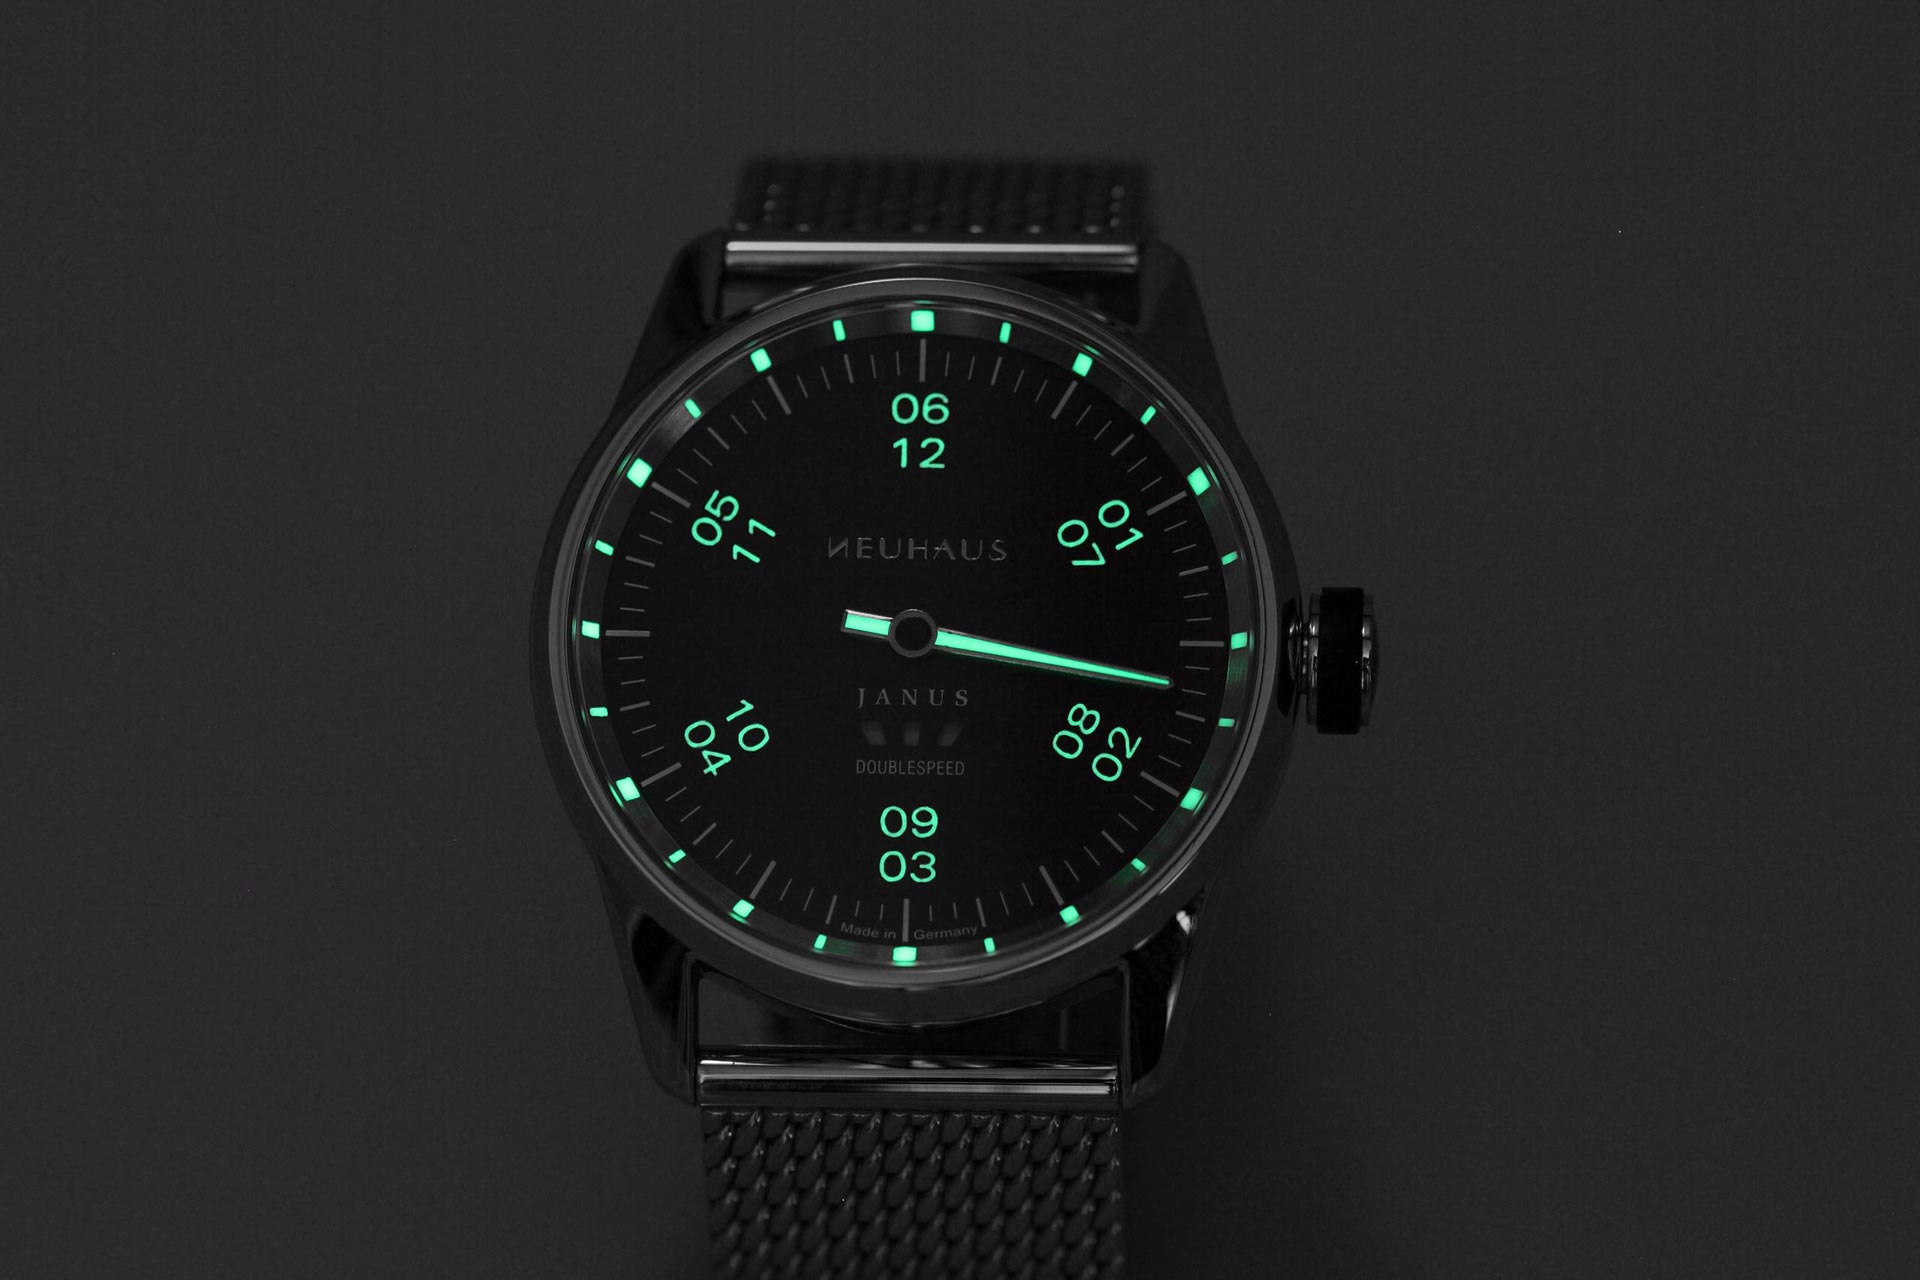 Einzeigeruhr von NEUHAUS Timepieces, Modell JANUS DoubleSpeed, leuchtend